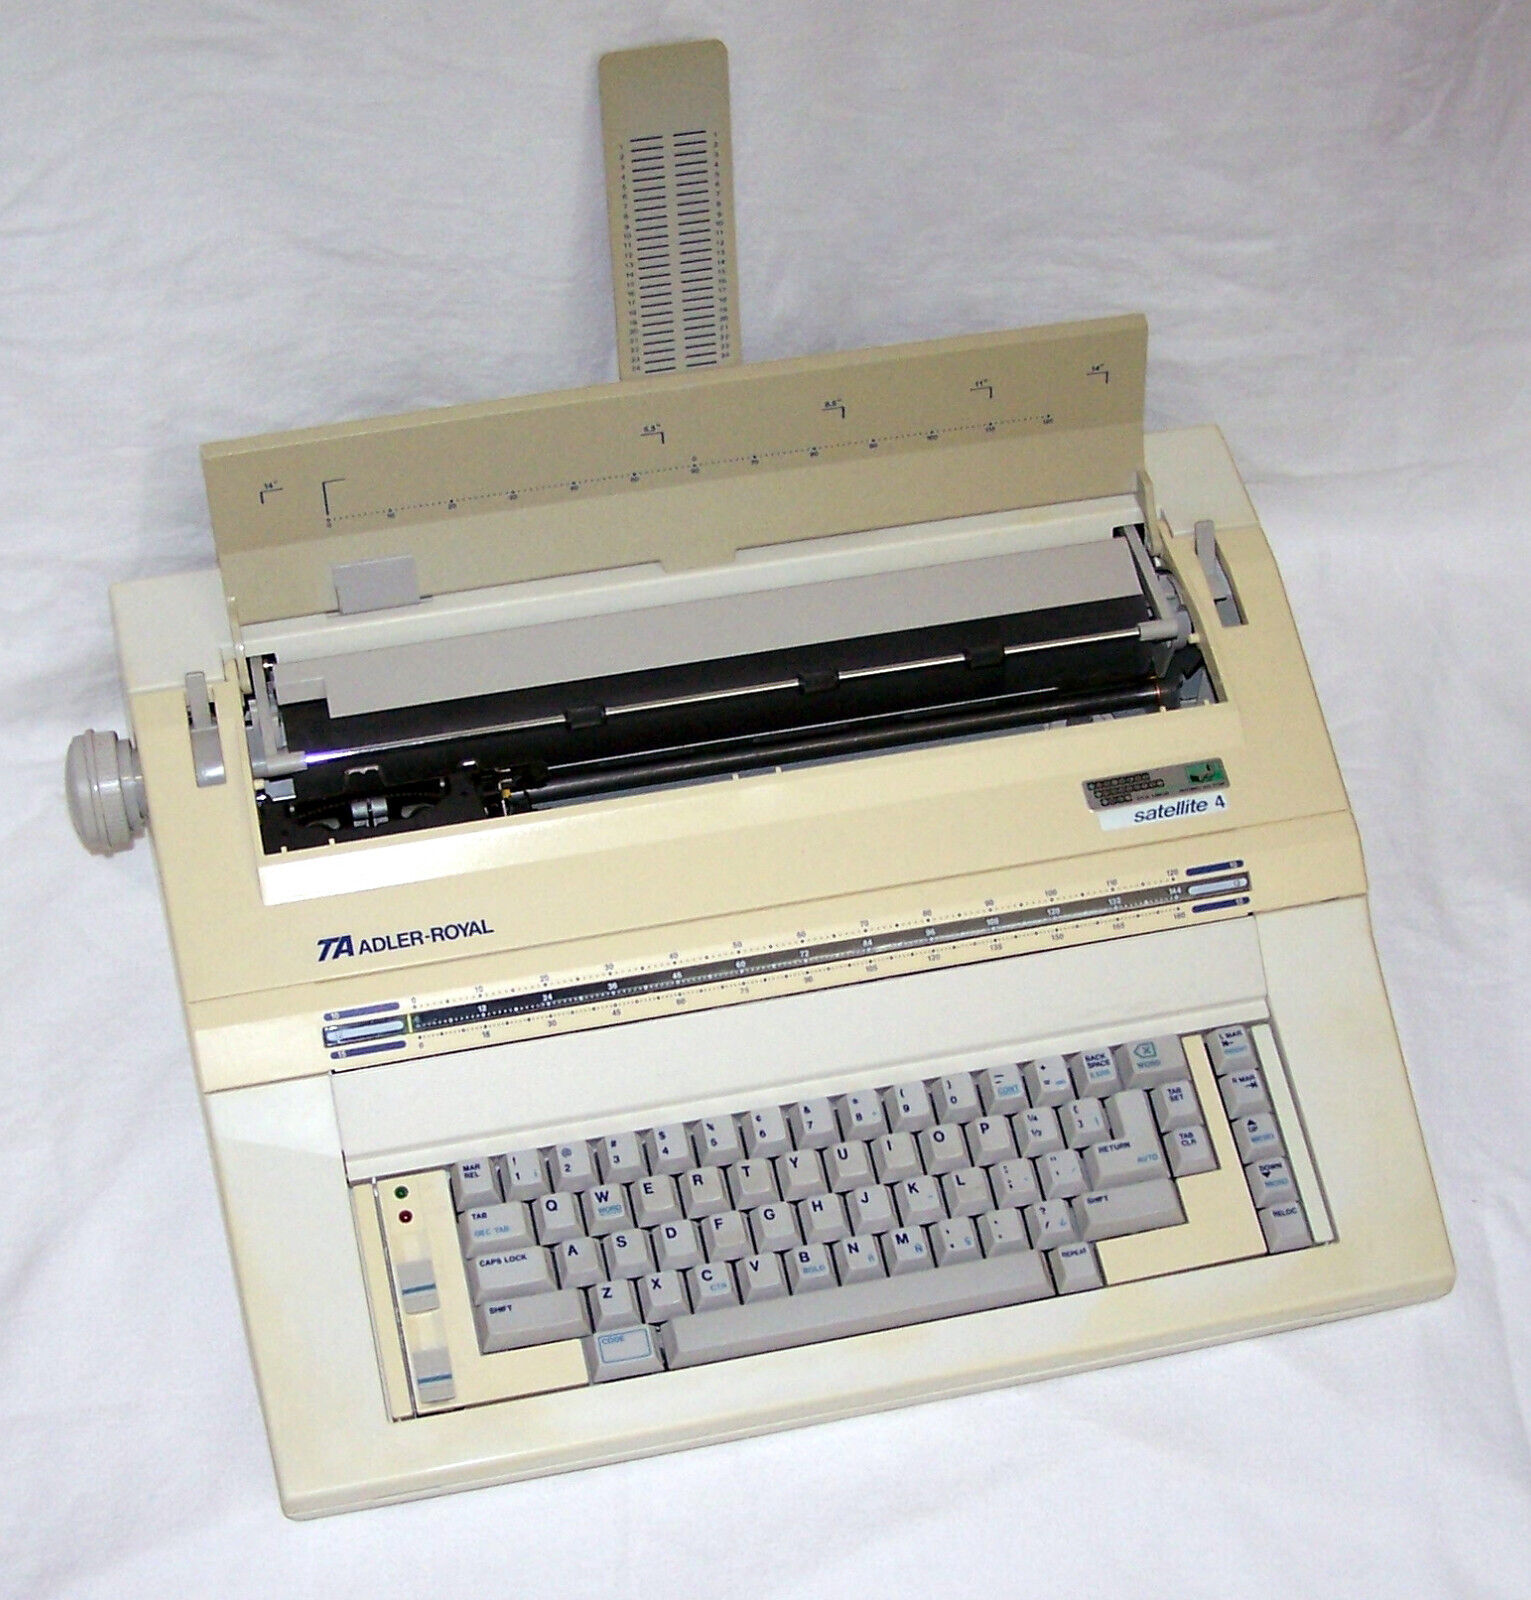 Adler-Royal Satellite 4 Wide Format Electronic Typewriter - Works Good